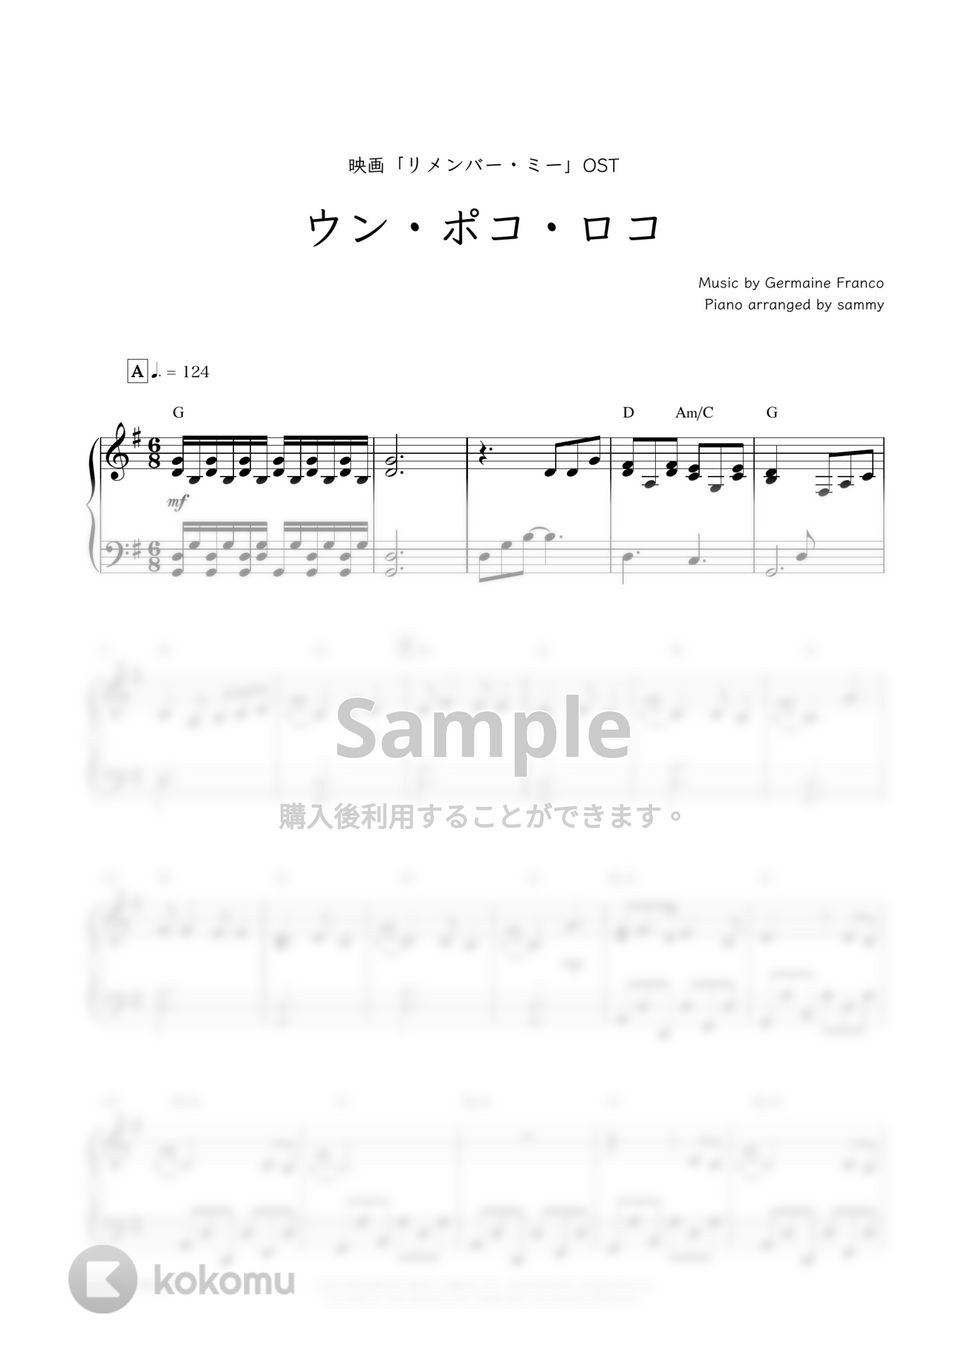 映画『リメンバー・ミー』OST - ウン・ポコ・ロコ by sammy